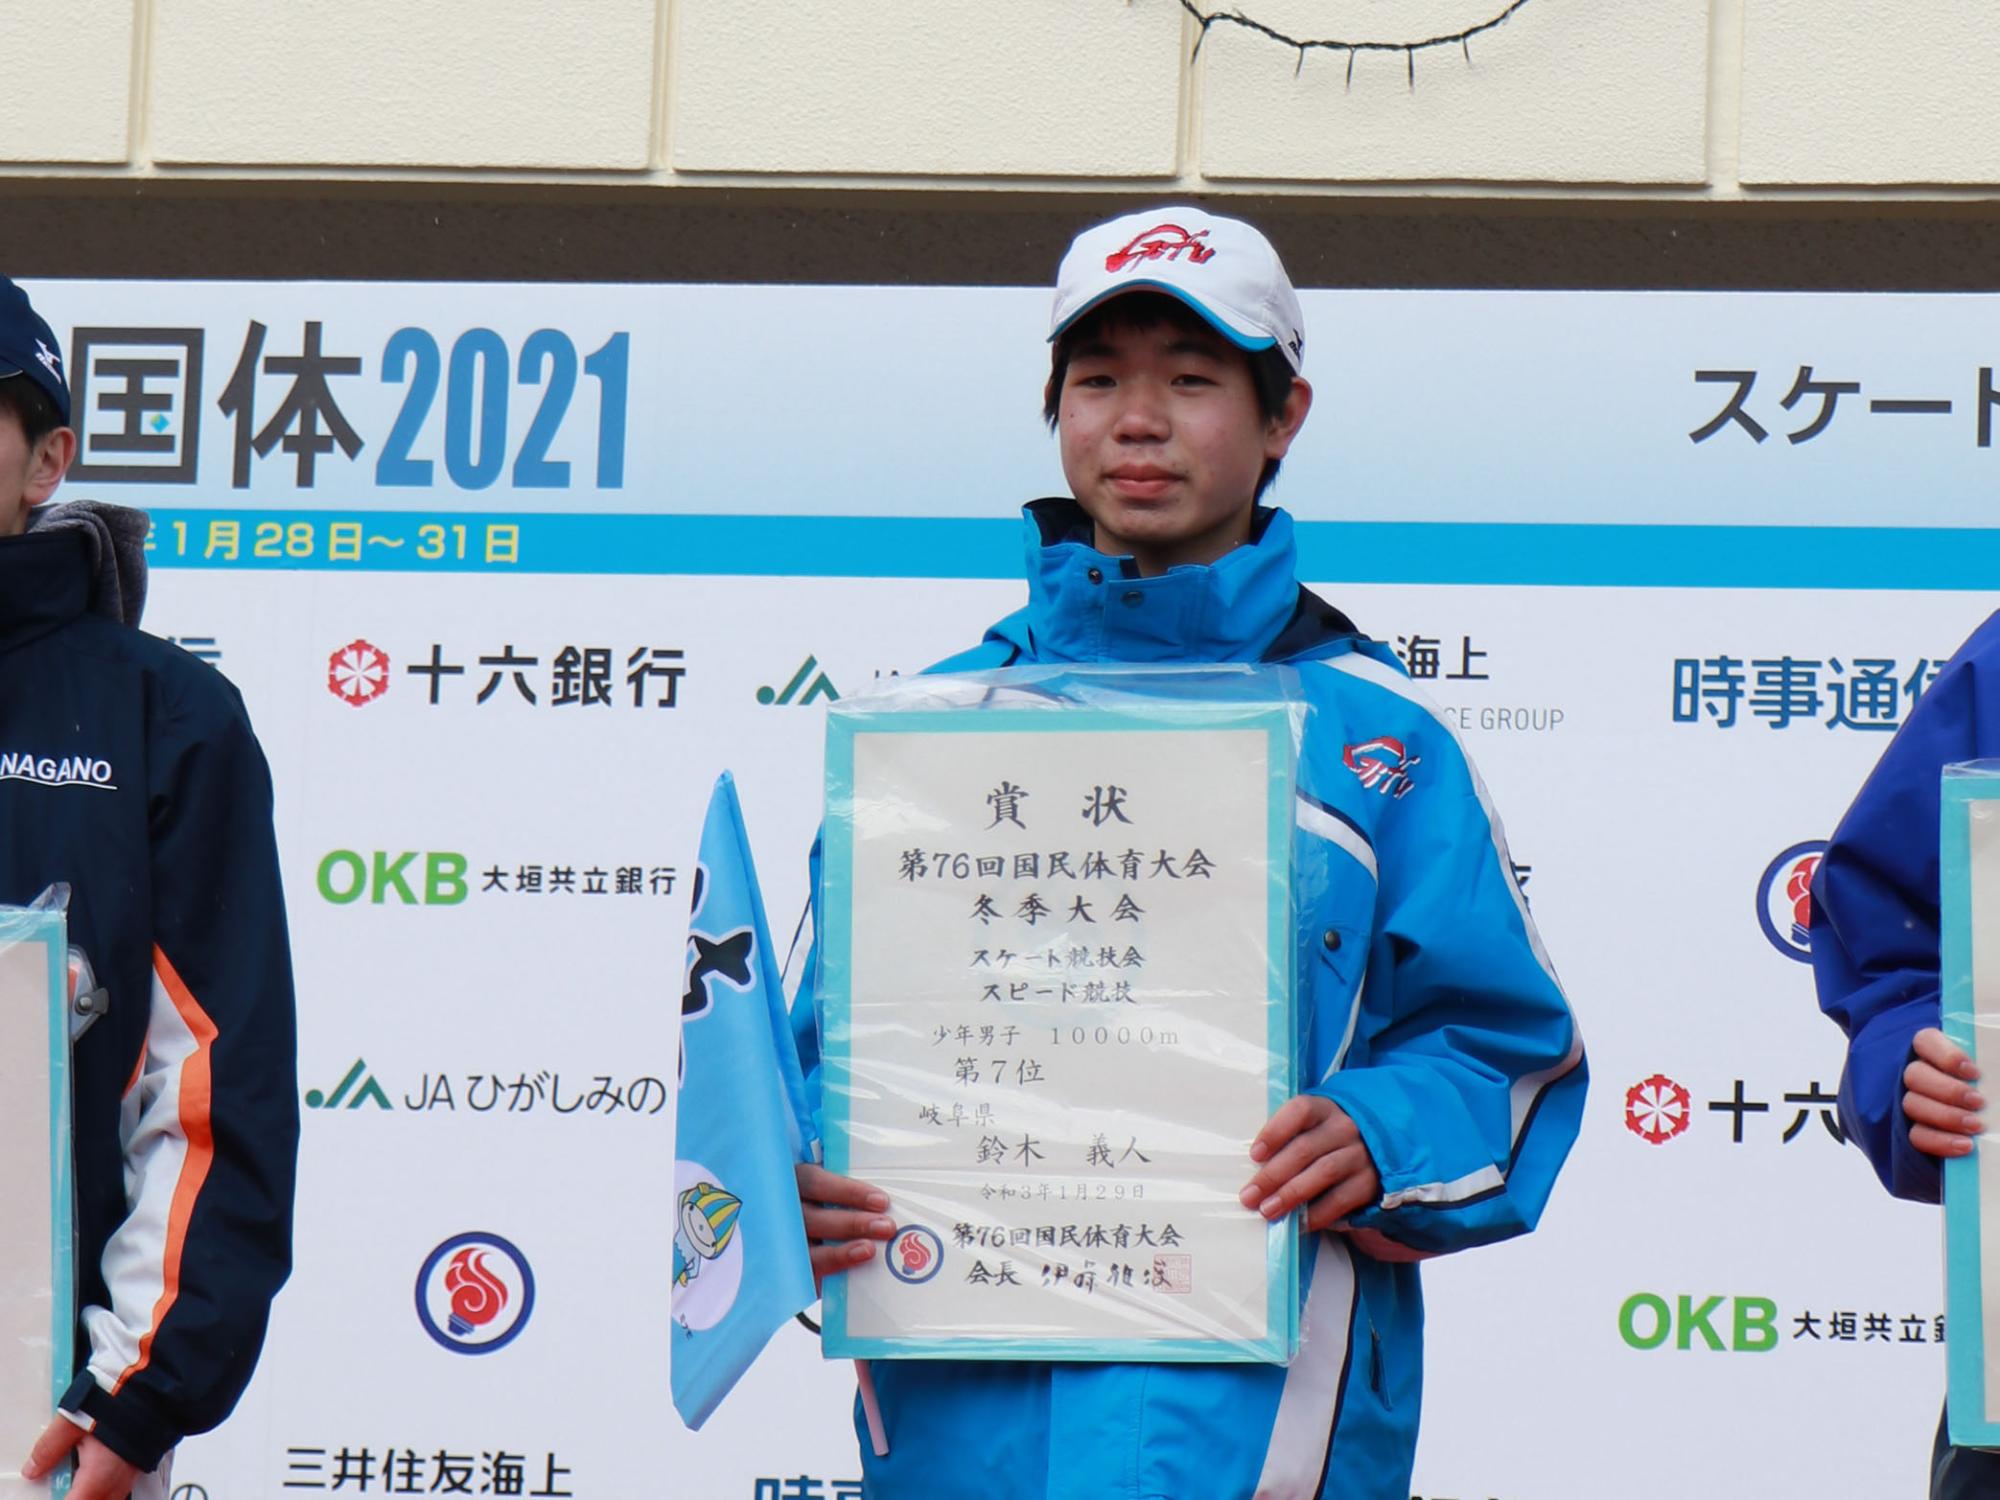 表彰式での鈴木義人選手